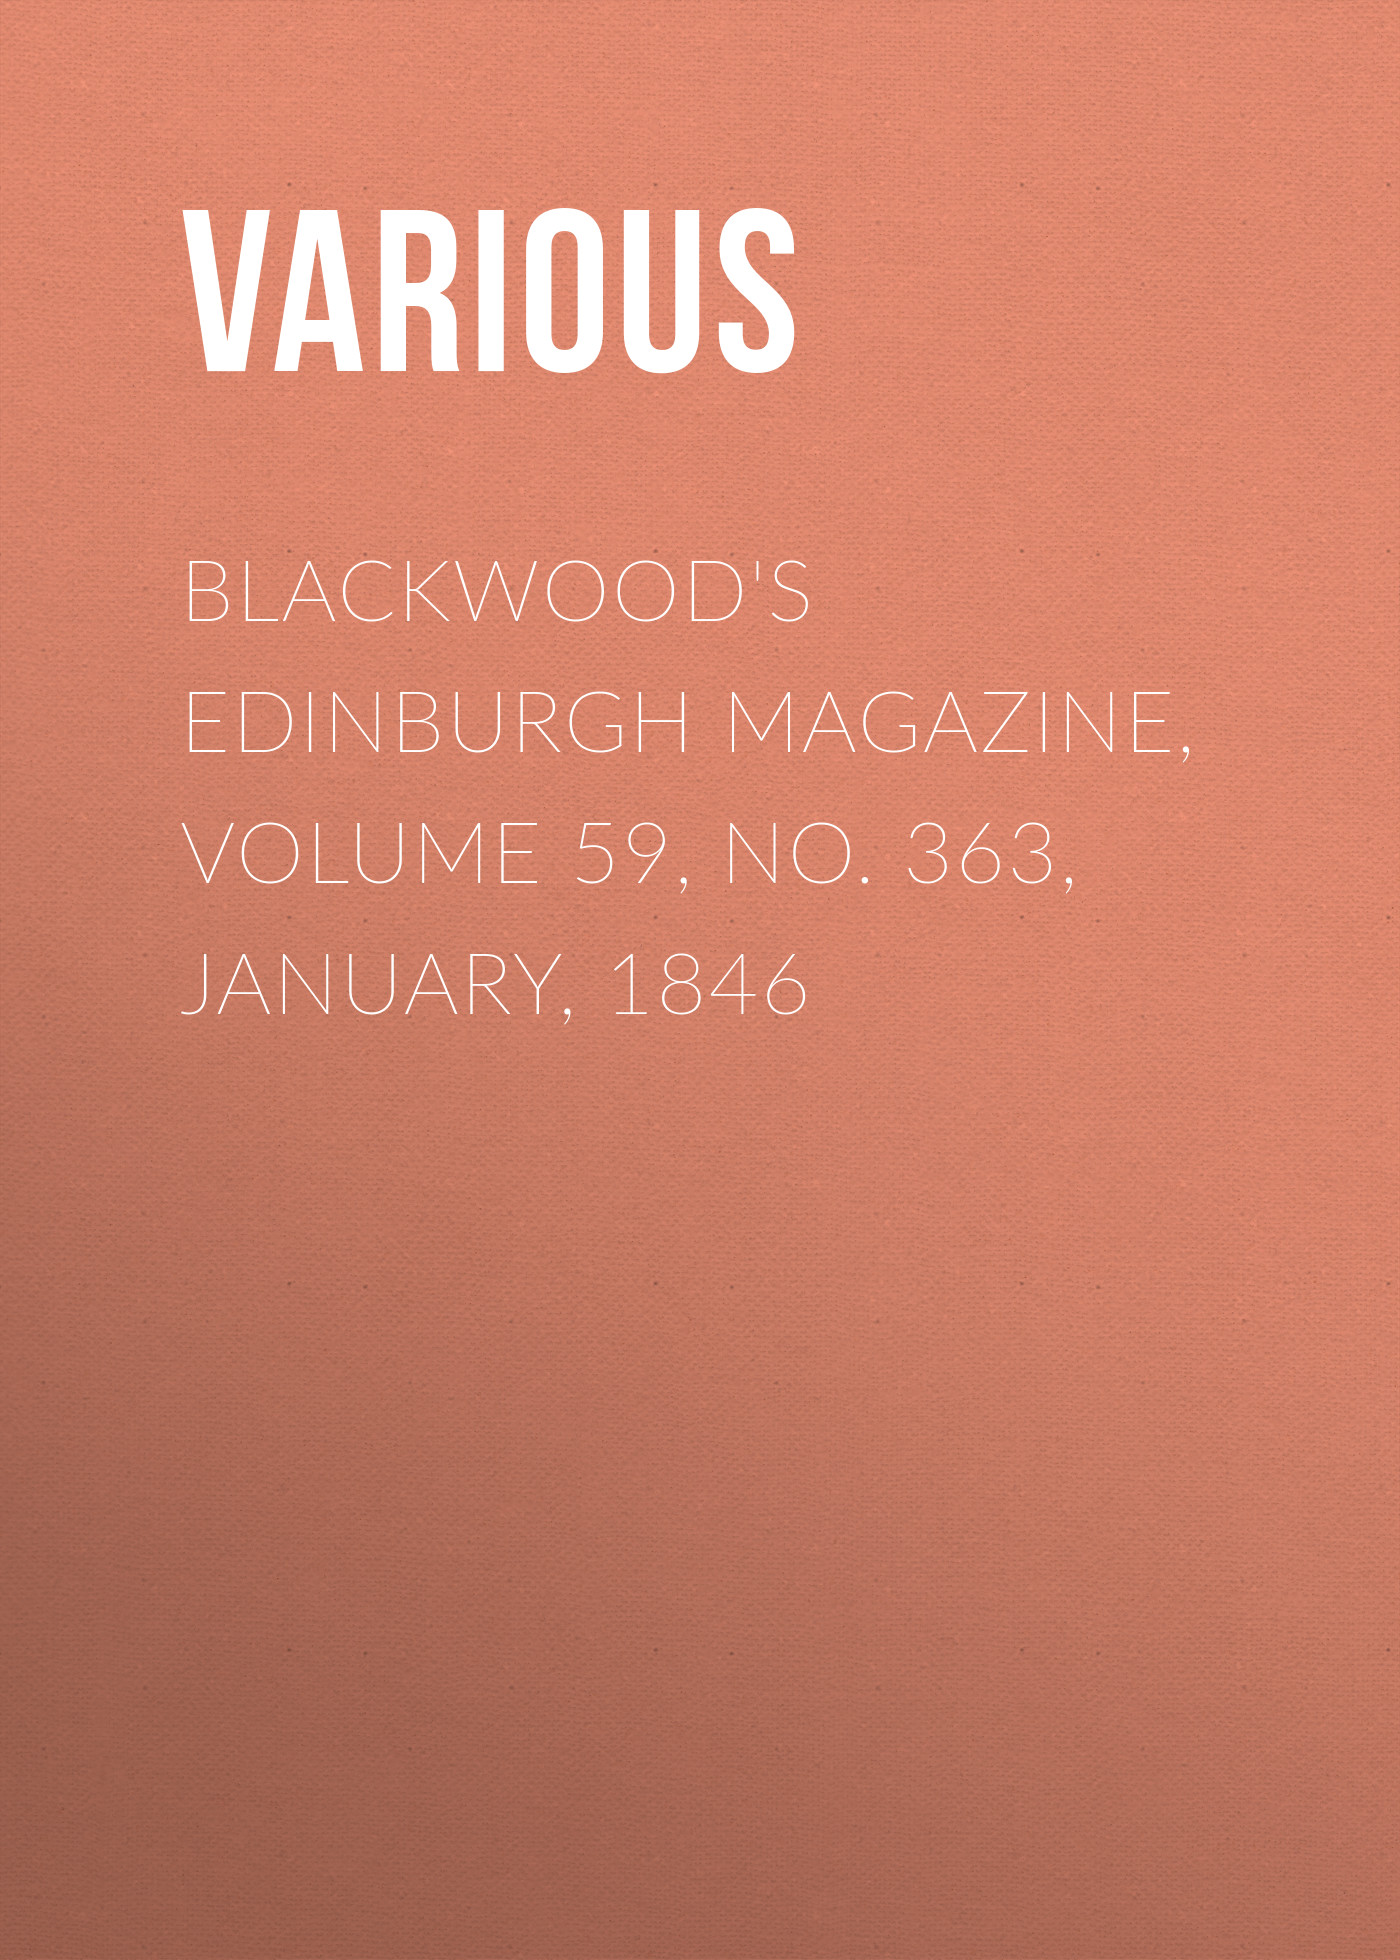 Книга Blackwood's Edinburgh Magazine, Volume 59, No. 363, January, 1846 из серии , созданная  Various, может относится к жанру Журналы, Зарубежная образовательная литература, Книги о Путешествиях. Стоимость электронной книги Blackwood's Edinburgh Magazine, Volume 59, No. 363, January, 1846 с идентификатором 25569455 составляет 0 руб.